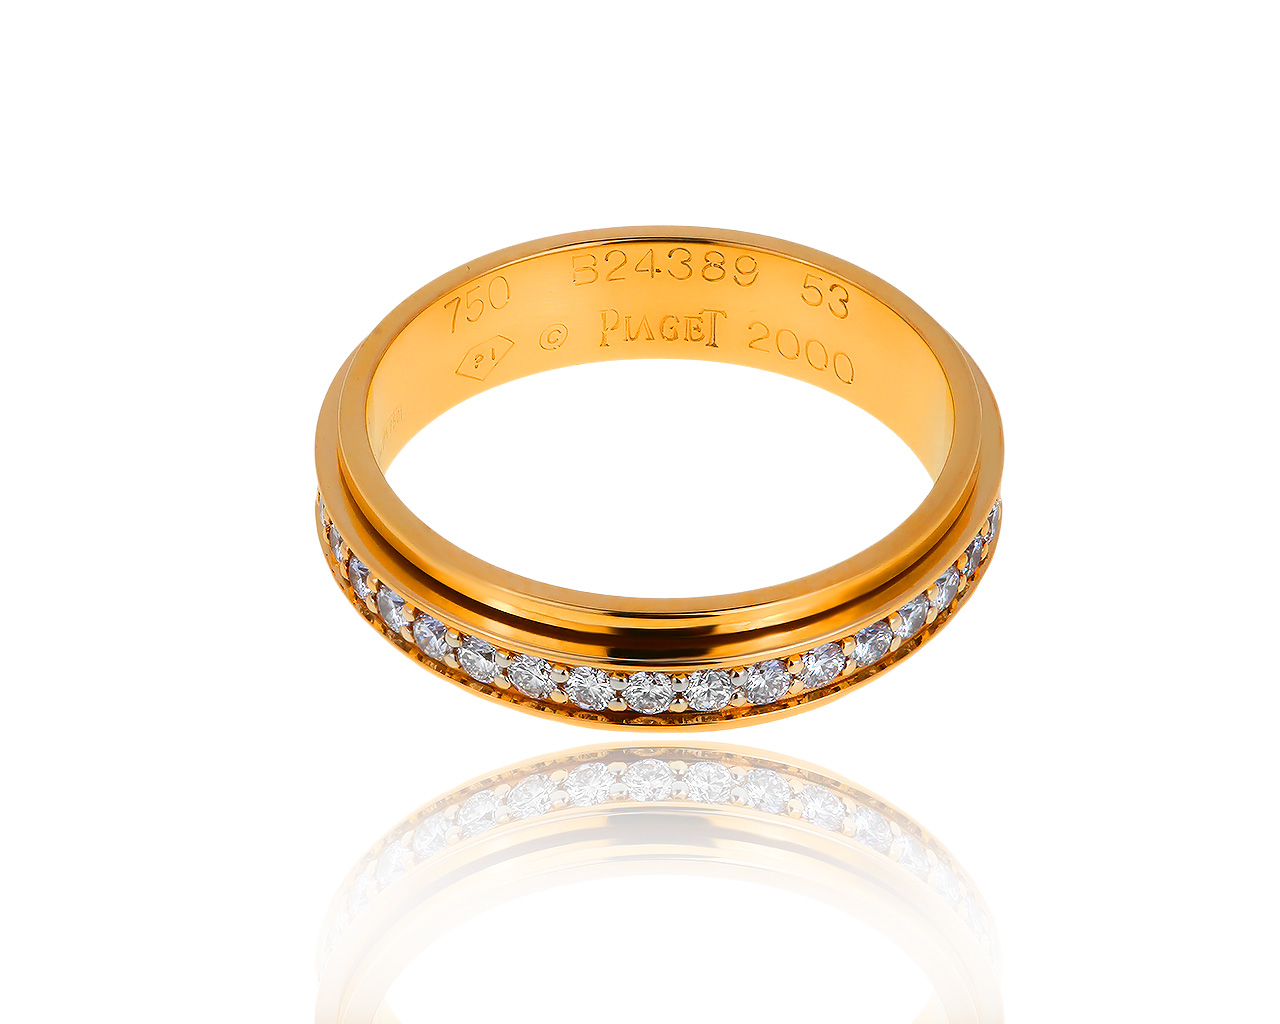 Оригинальное золотое кольцо с бриллиантами 0.55ct Piaget Possession